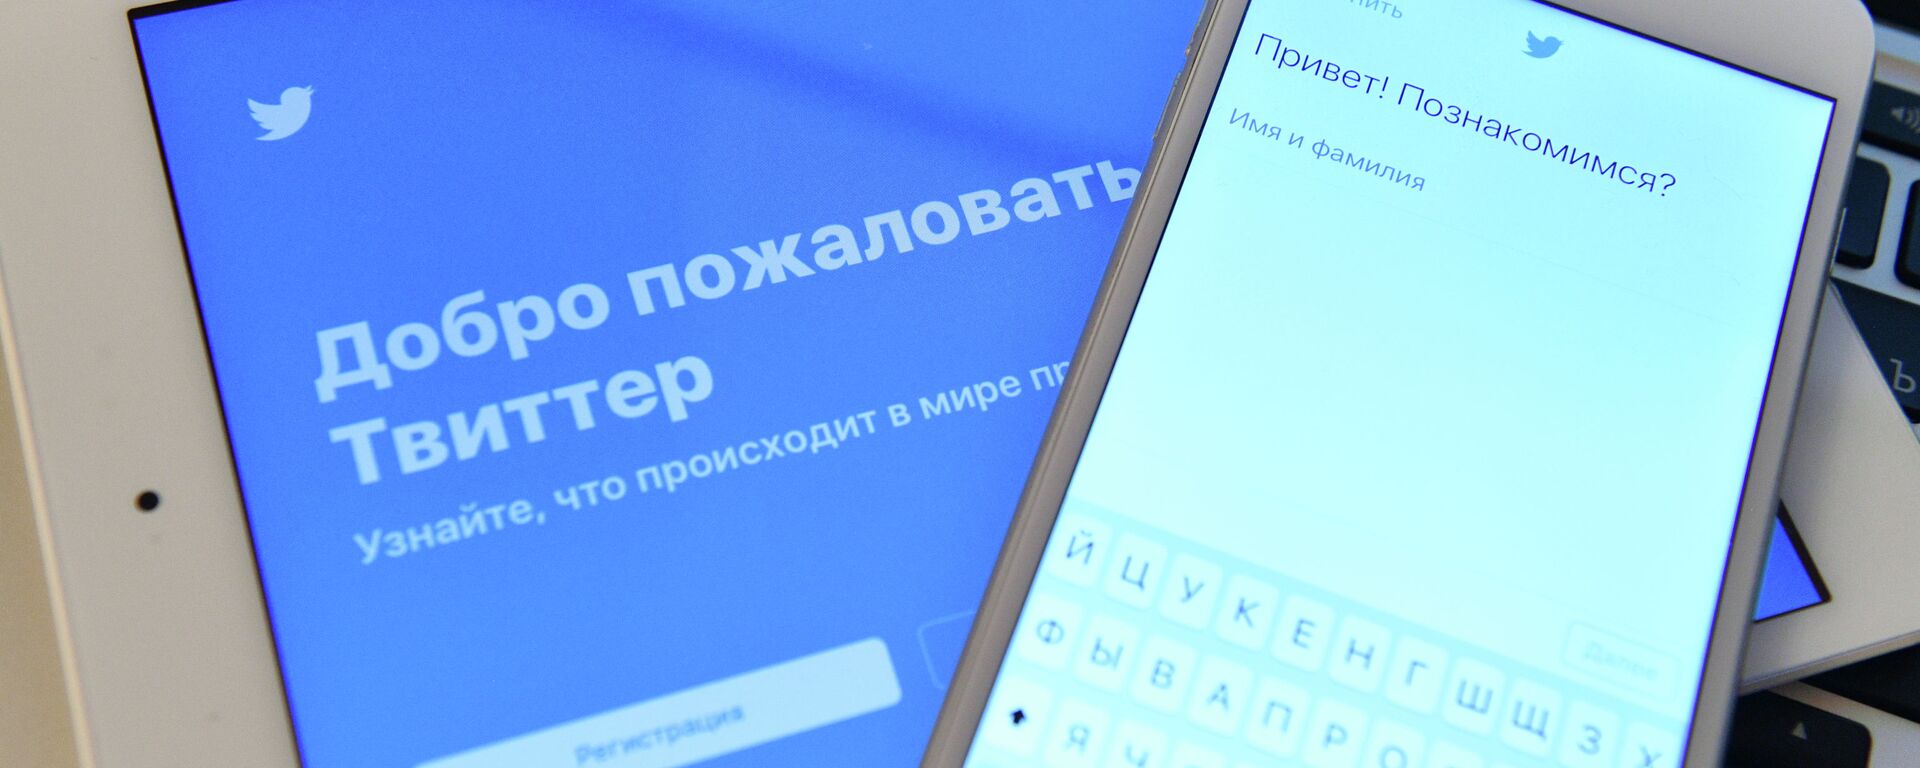 Страница социальной сети Twitter на экранах смартфона и планшета - Sputnik Казахстан, 1920, 02.04.2021